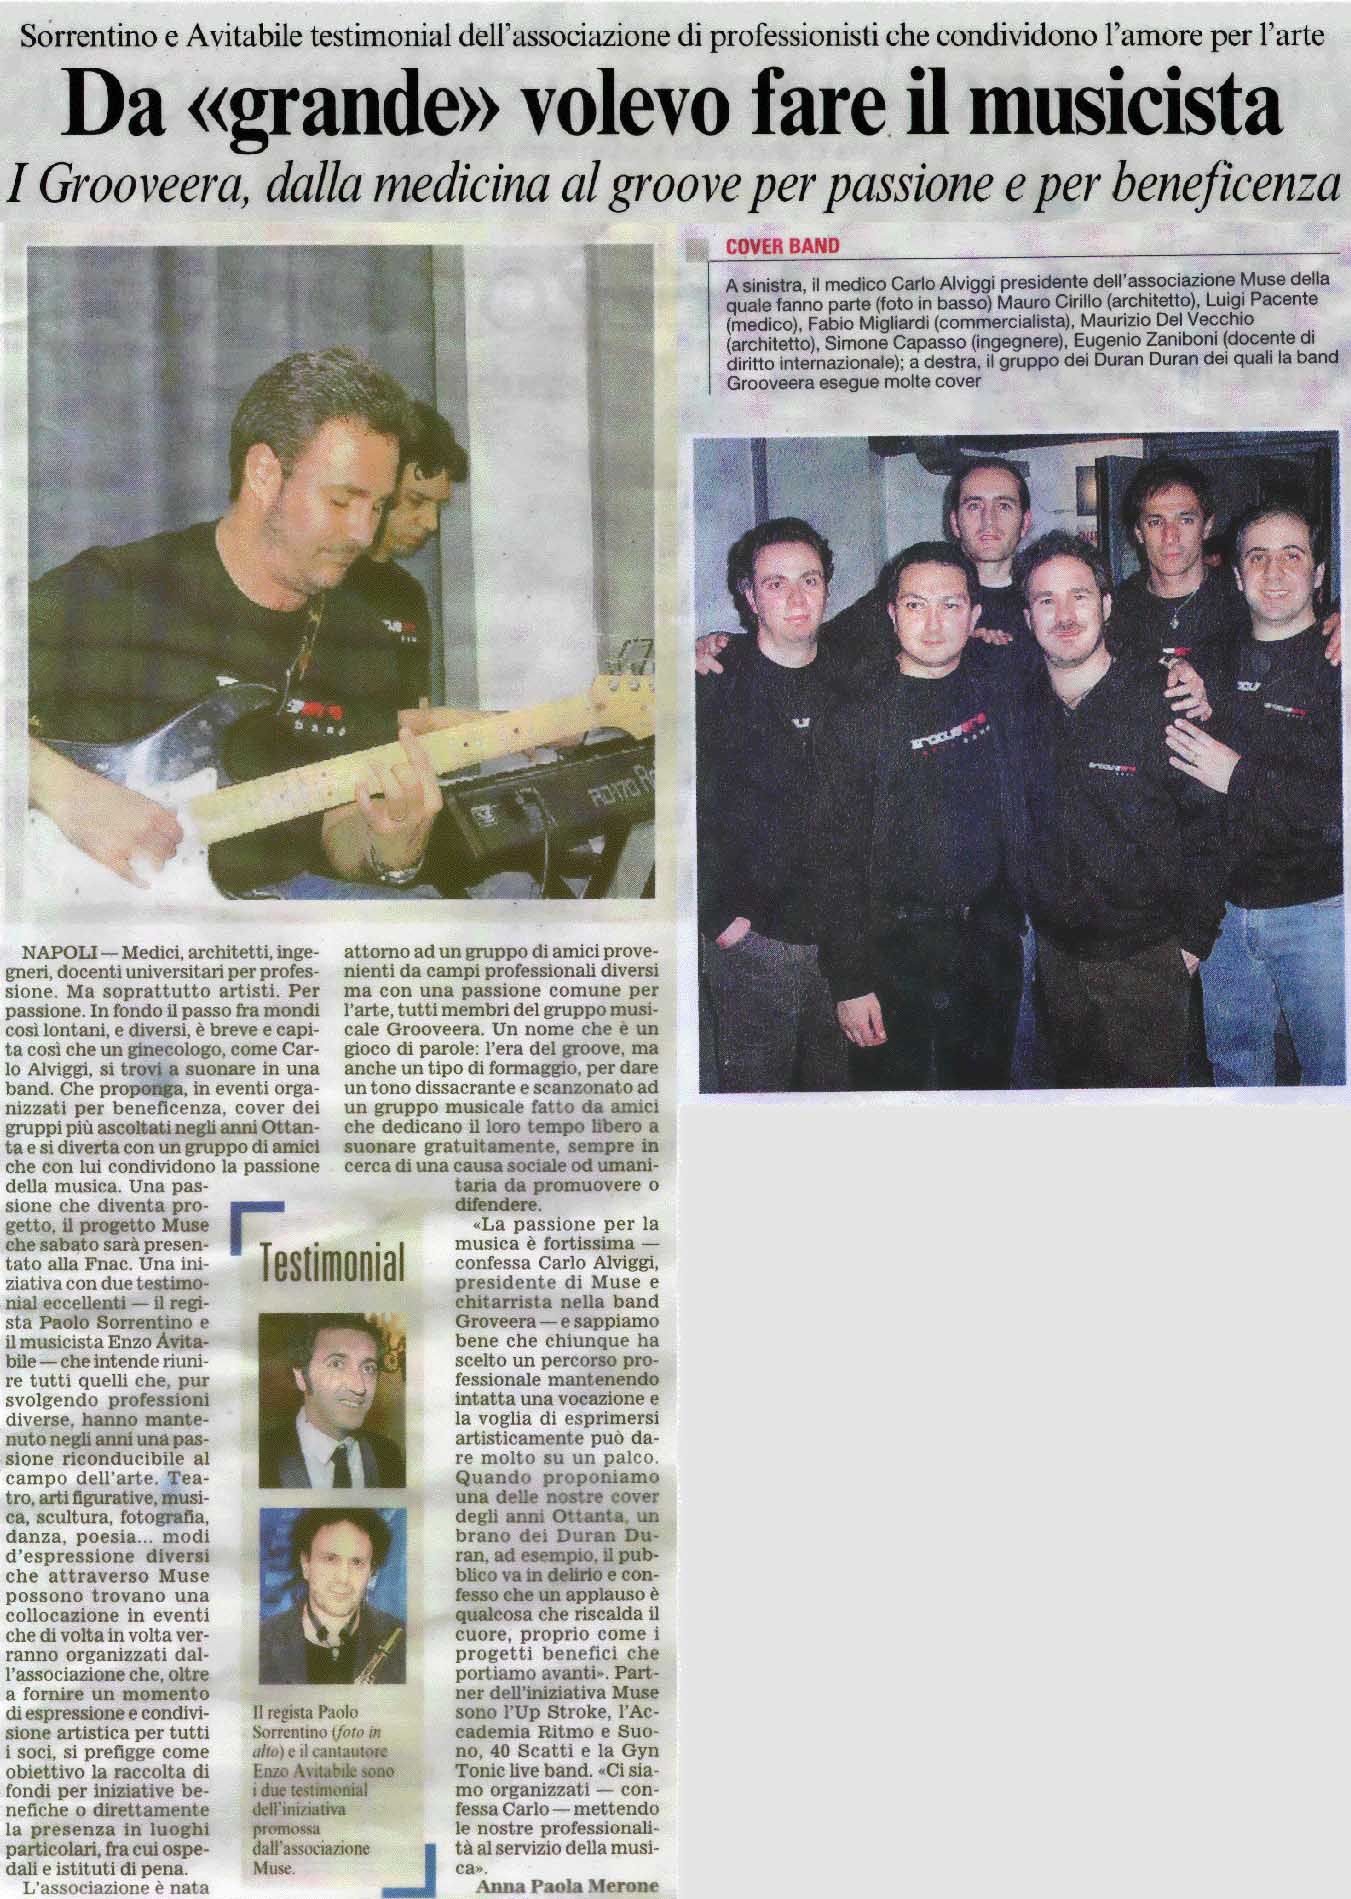 Articolo pubblicato su 'Il Corriere del Mezzogiorno', gioved' 7 giugno 2007